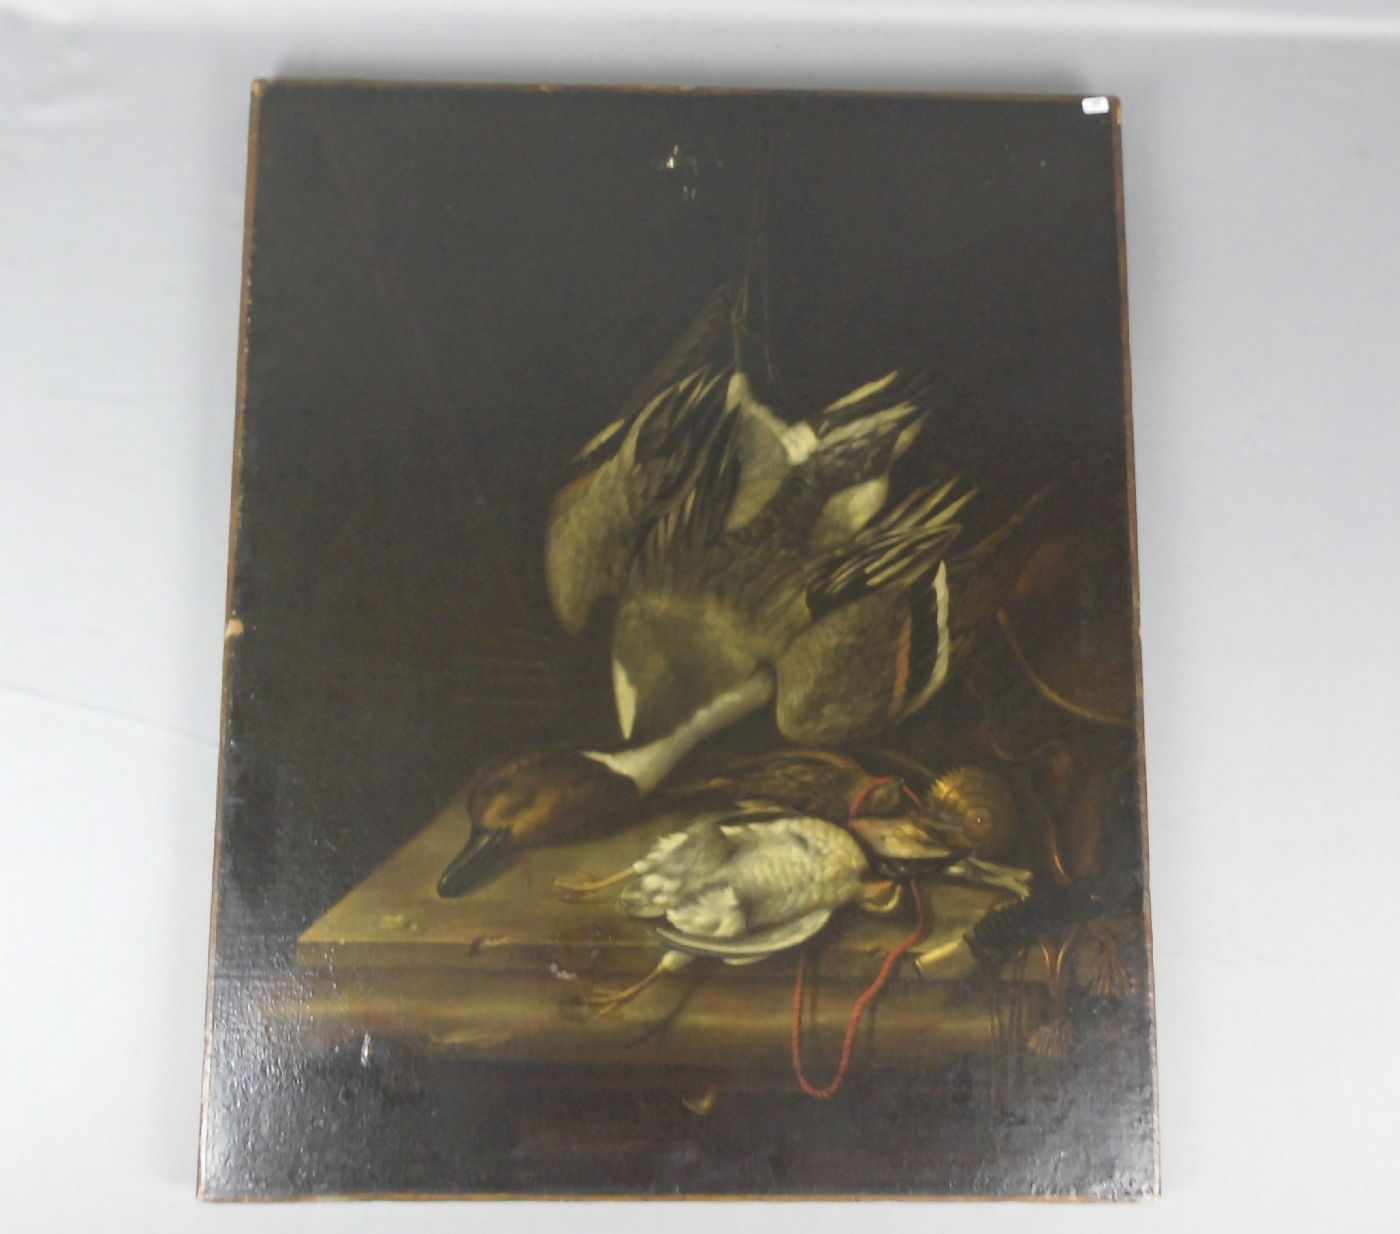 AALST, G. V. (17. Jh.), Gemälde / painting: "Jagdliches Stillleben mit Ente, Rebhuhn und Wachtel",